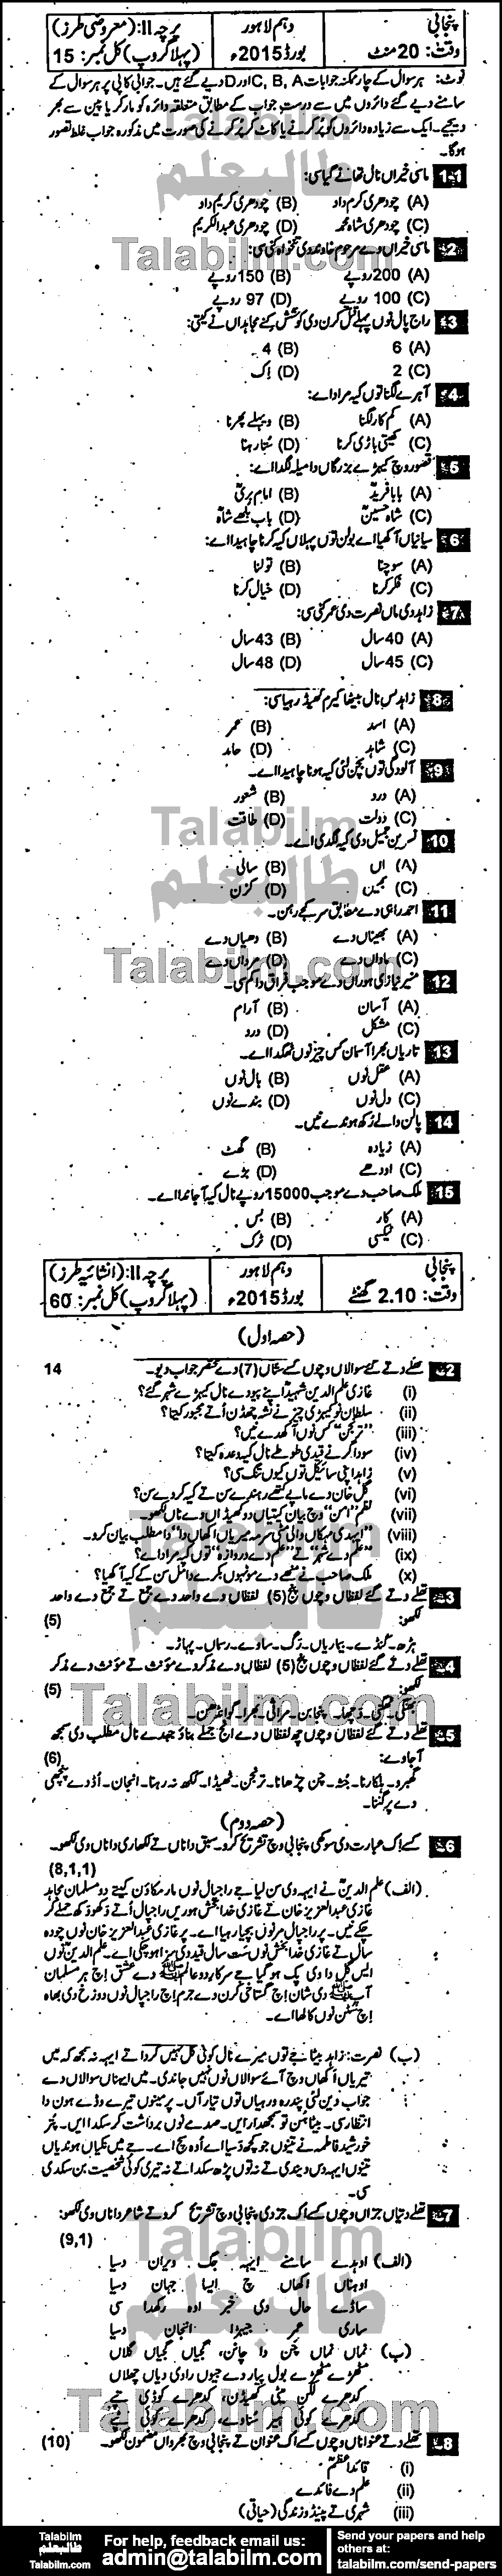 Punjabi 0 past paper for Urdu Medium 2015 Group-I